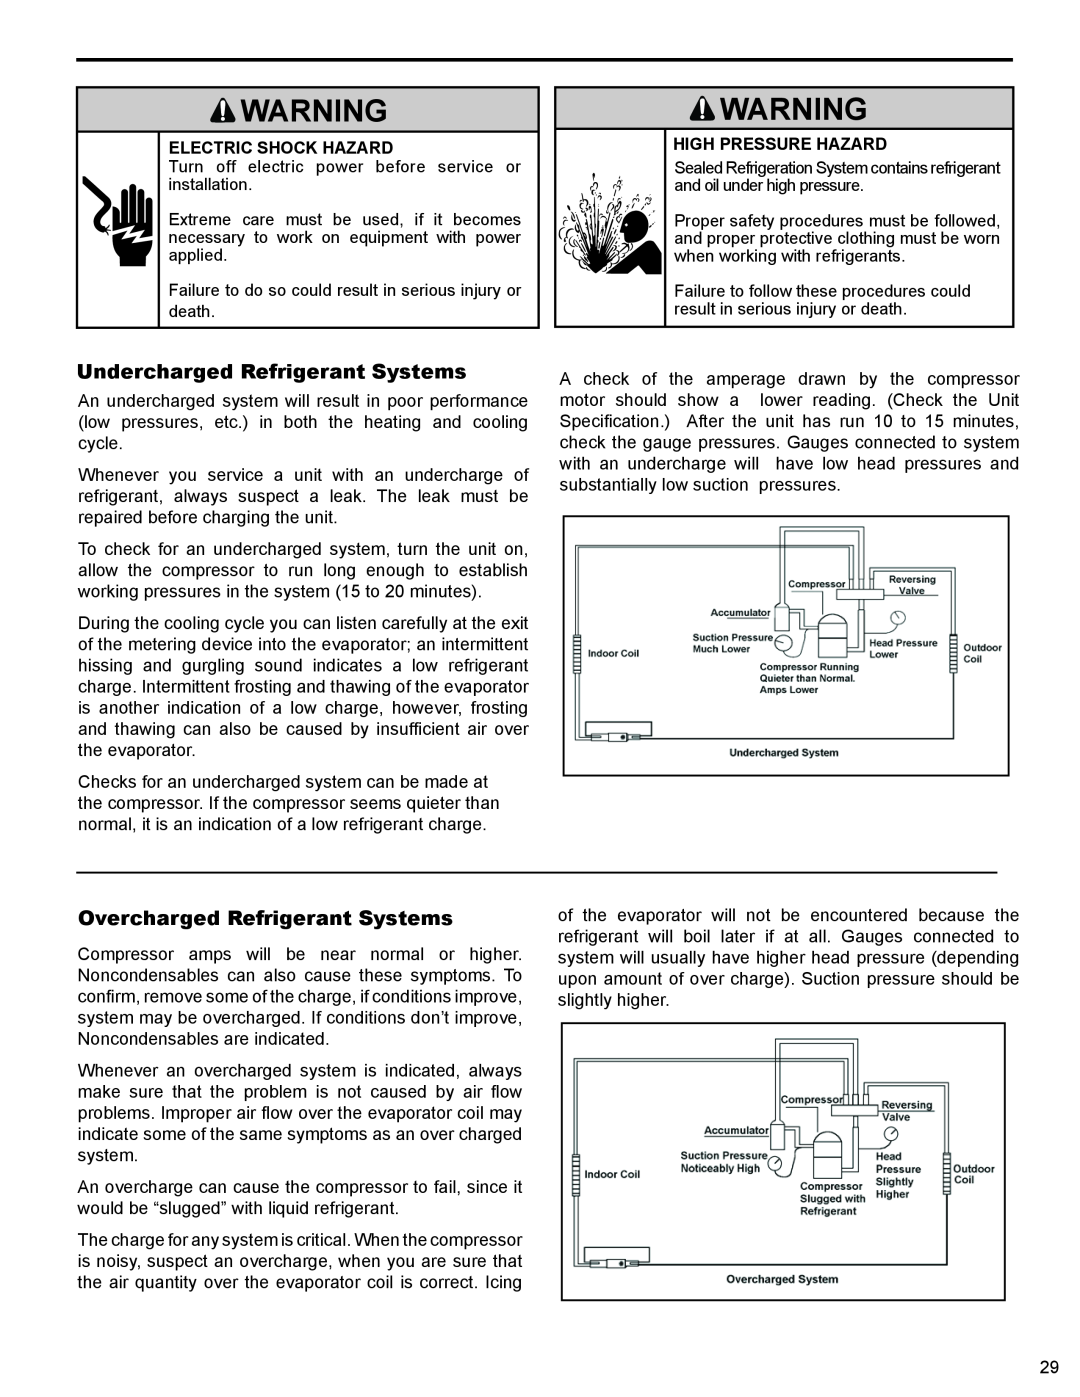 Friedrich 2009, 2008 service manual Undercharged Refrigerant Systems, Overcharged Refrigerant Systems, Electric Shock Hazard 